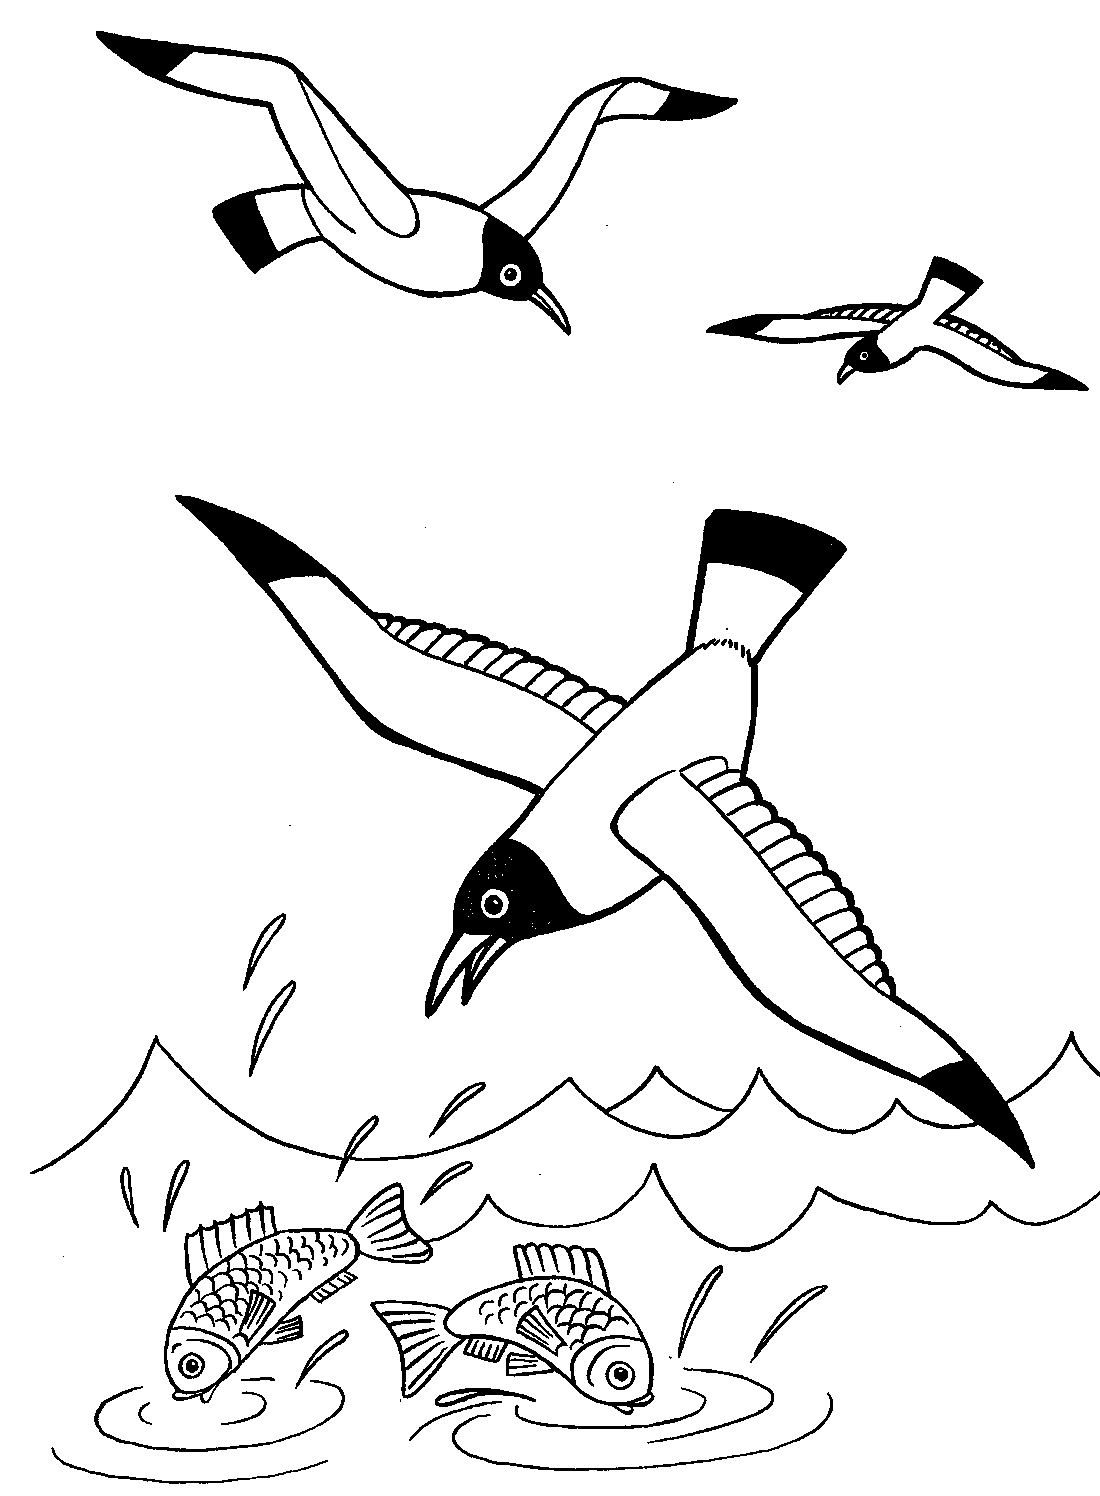 Раскраски Чайка Раскраска чайка – это собрание изображений с птичкой, живущей по всей планете вблизи морей, океанов.